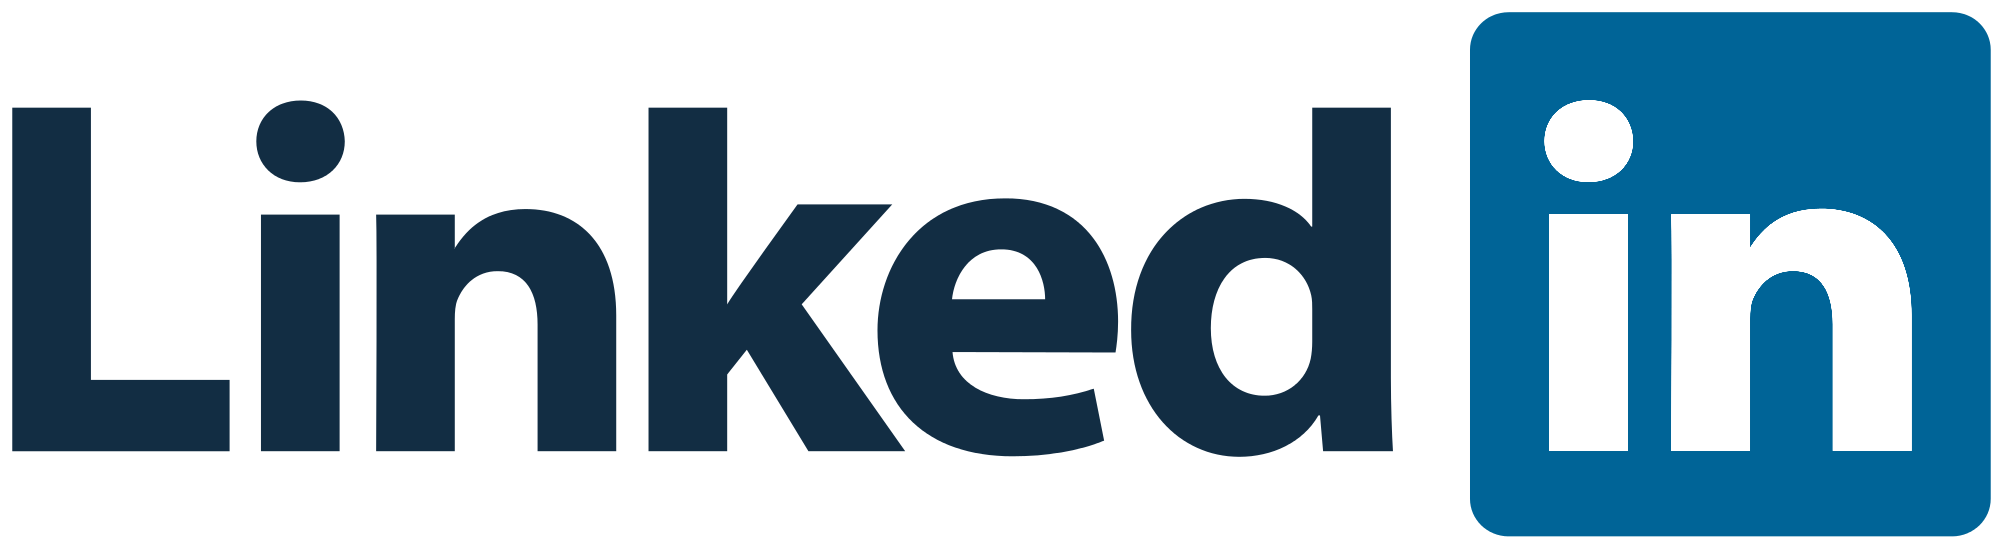 linkedin-logo-png